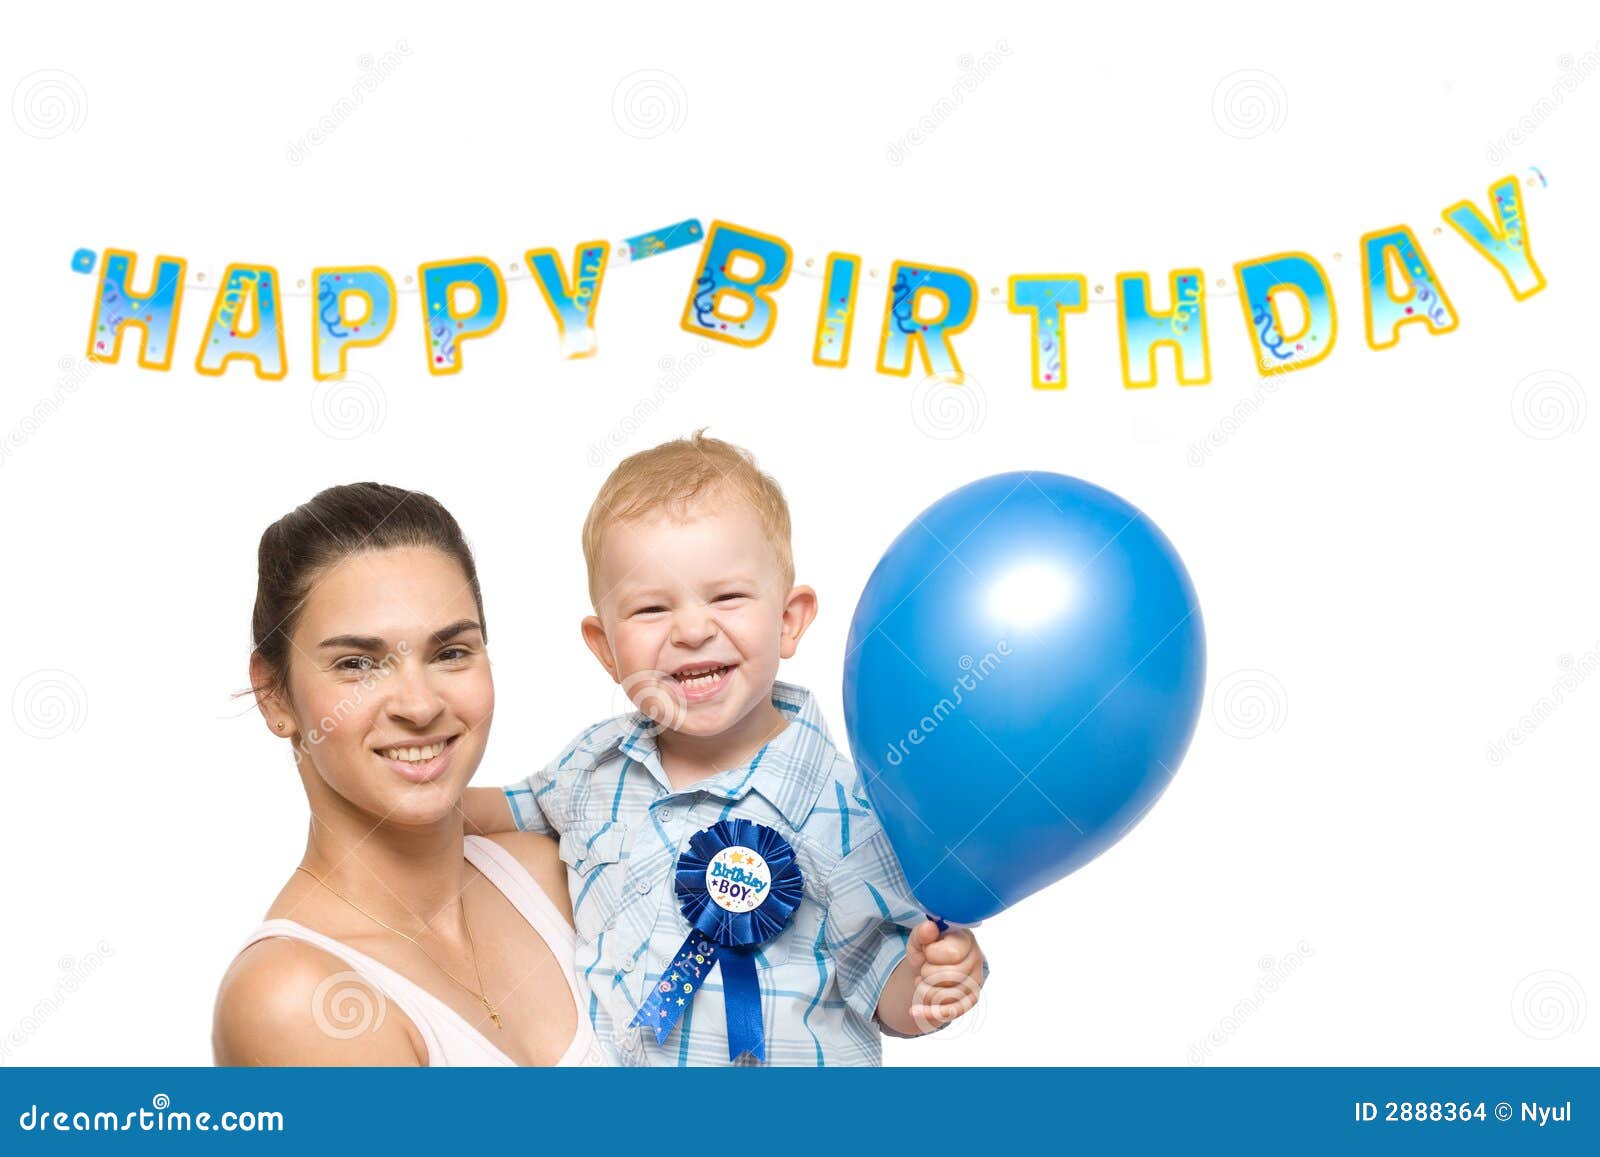 feliz cumpleaños, niña de 2 años Foto de stock 1934453846